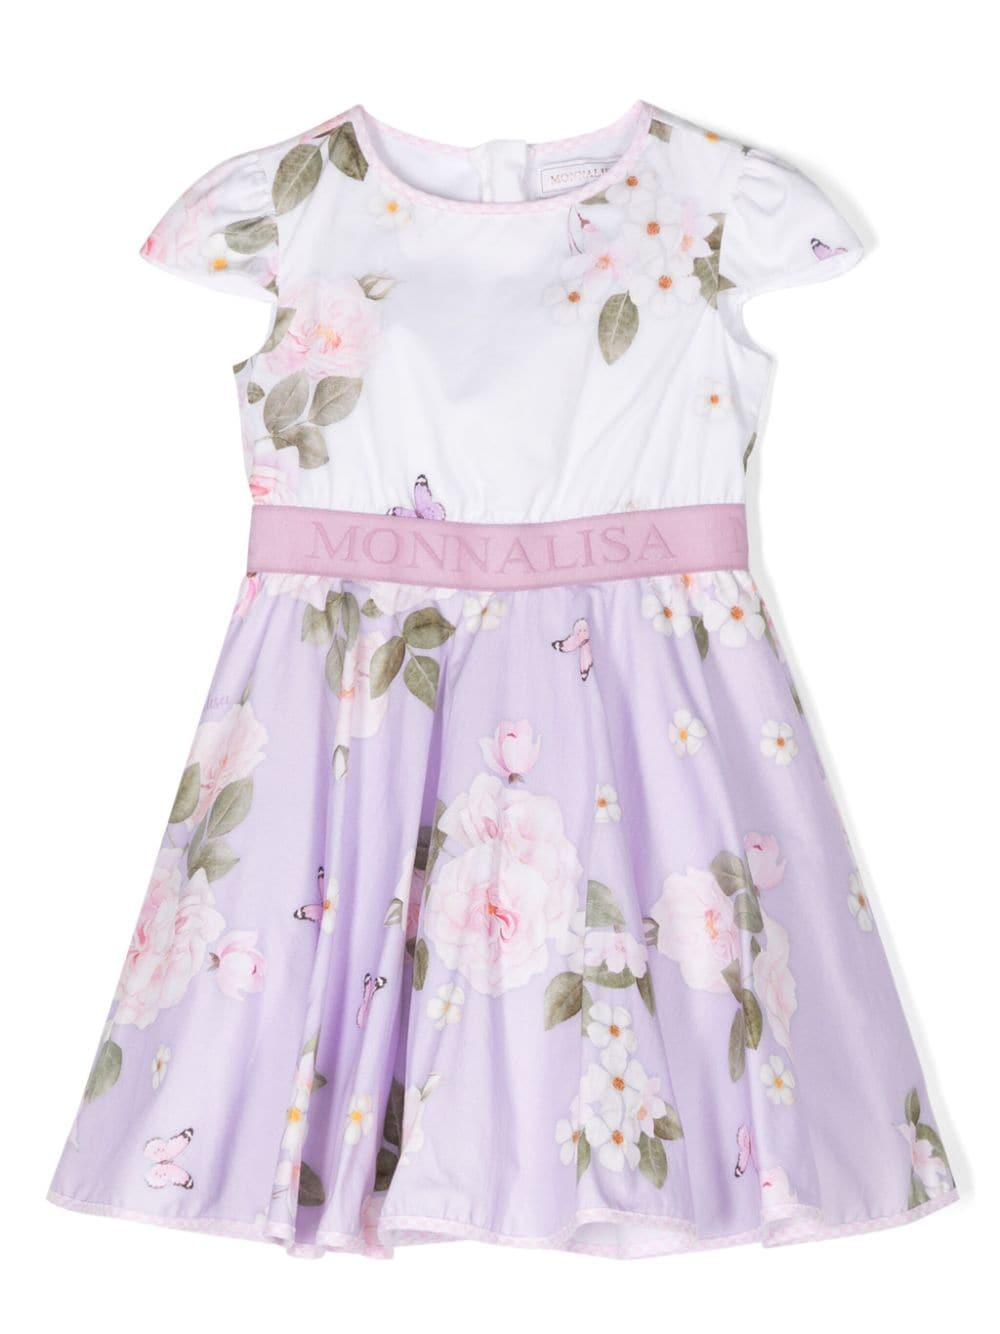 White/lilac floral print dress